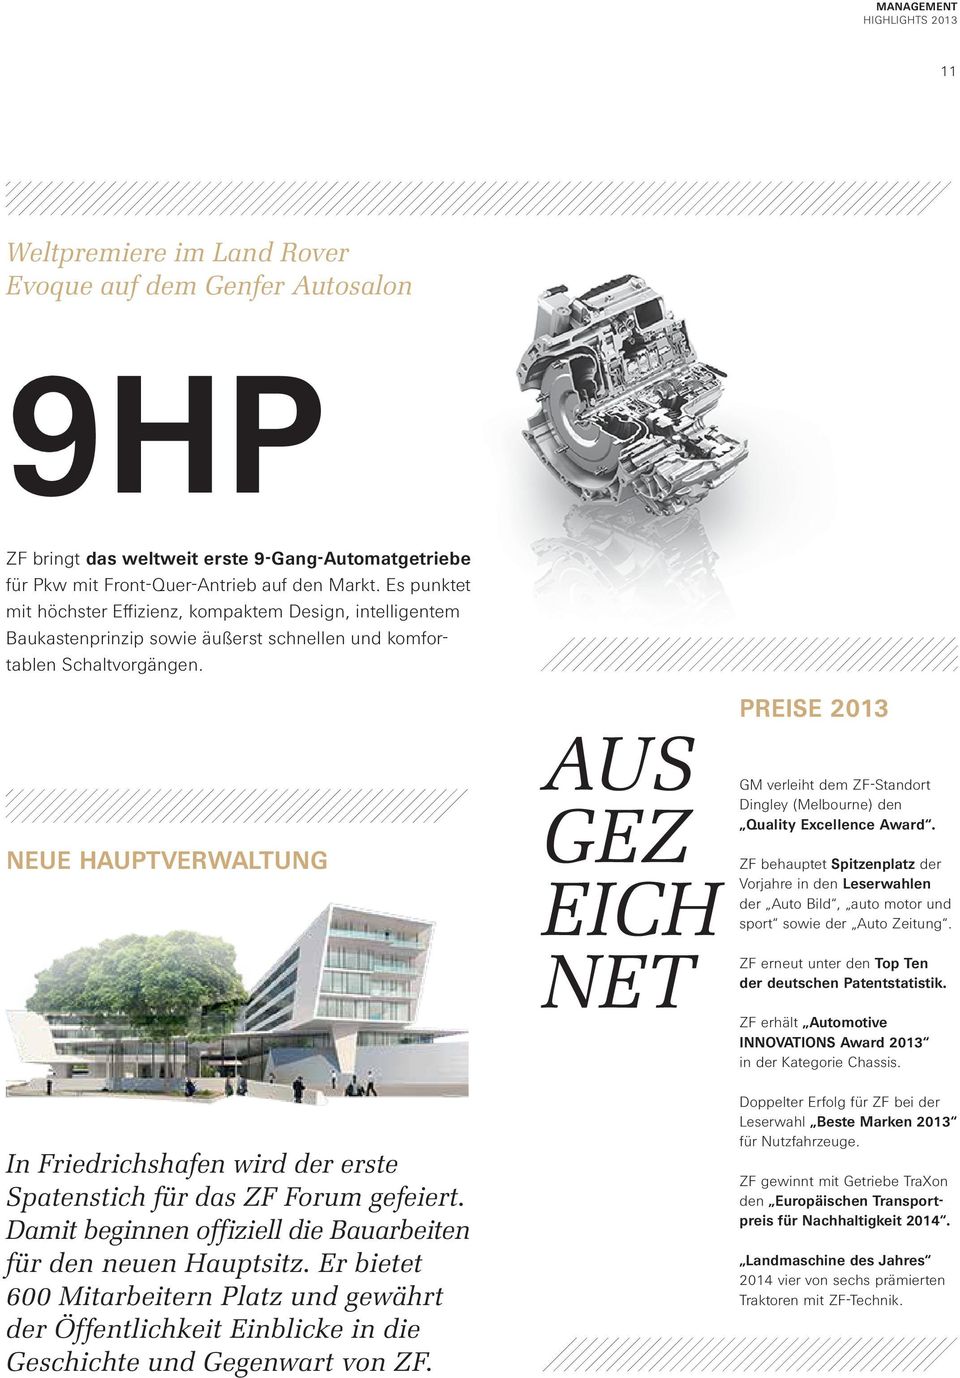 Neue Hauptverwaltung In Friedrichshafen wird der erste Spatenstich für das ZF Forum gefeiert. Damit beginnen offiziell die Bauarbeiten für den neuen Hauptsitz.